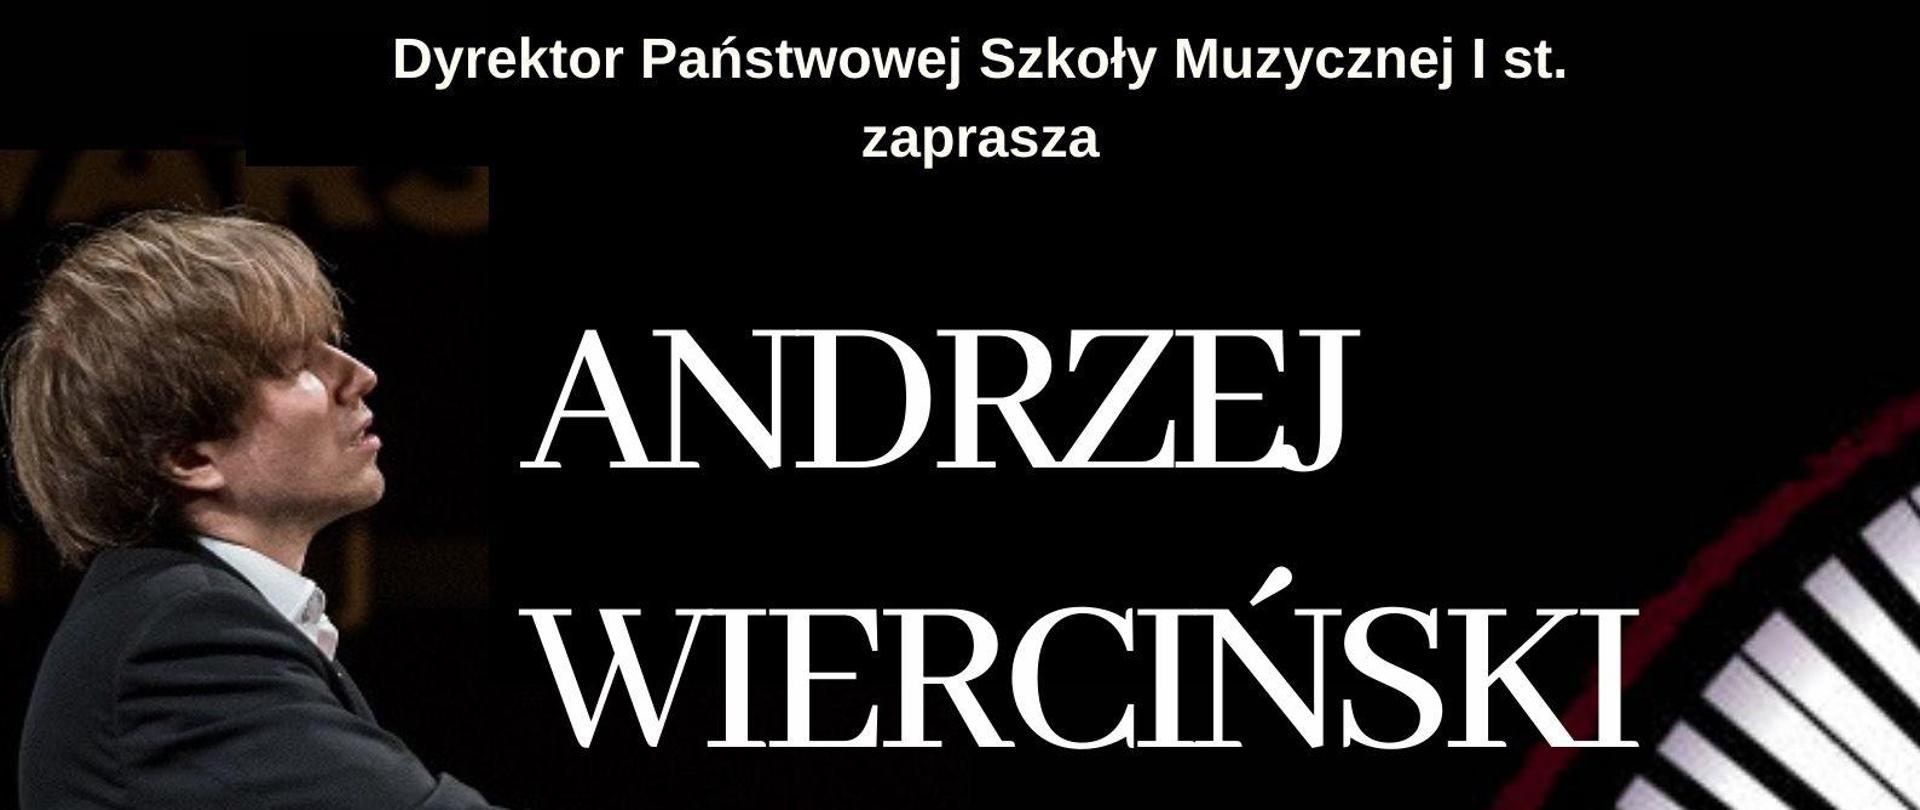 Plakat informujący o koncercie pianisty Andrzeja Wiercińskiego, który odbędzie się 18 lipca o godzinie 18:00. Głównym elementem plakatu jest zdjęcie artysty przy fortepianie oraz klawiatura fortepianowa. Plakat w kolorach czerni i zgazonej czerwieni. U dołu plakatu logotypy sponsorów letnich koncertów. 